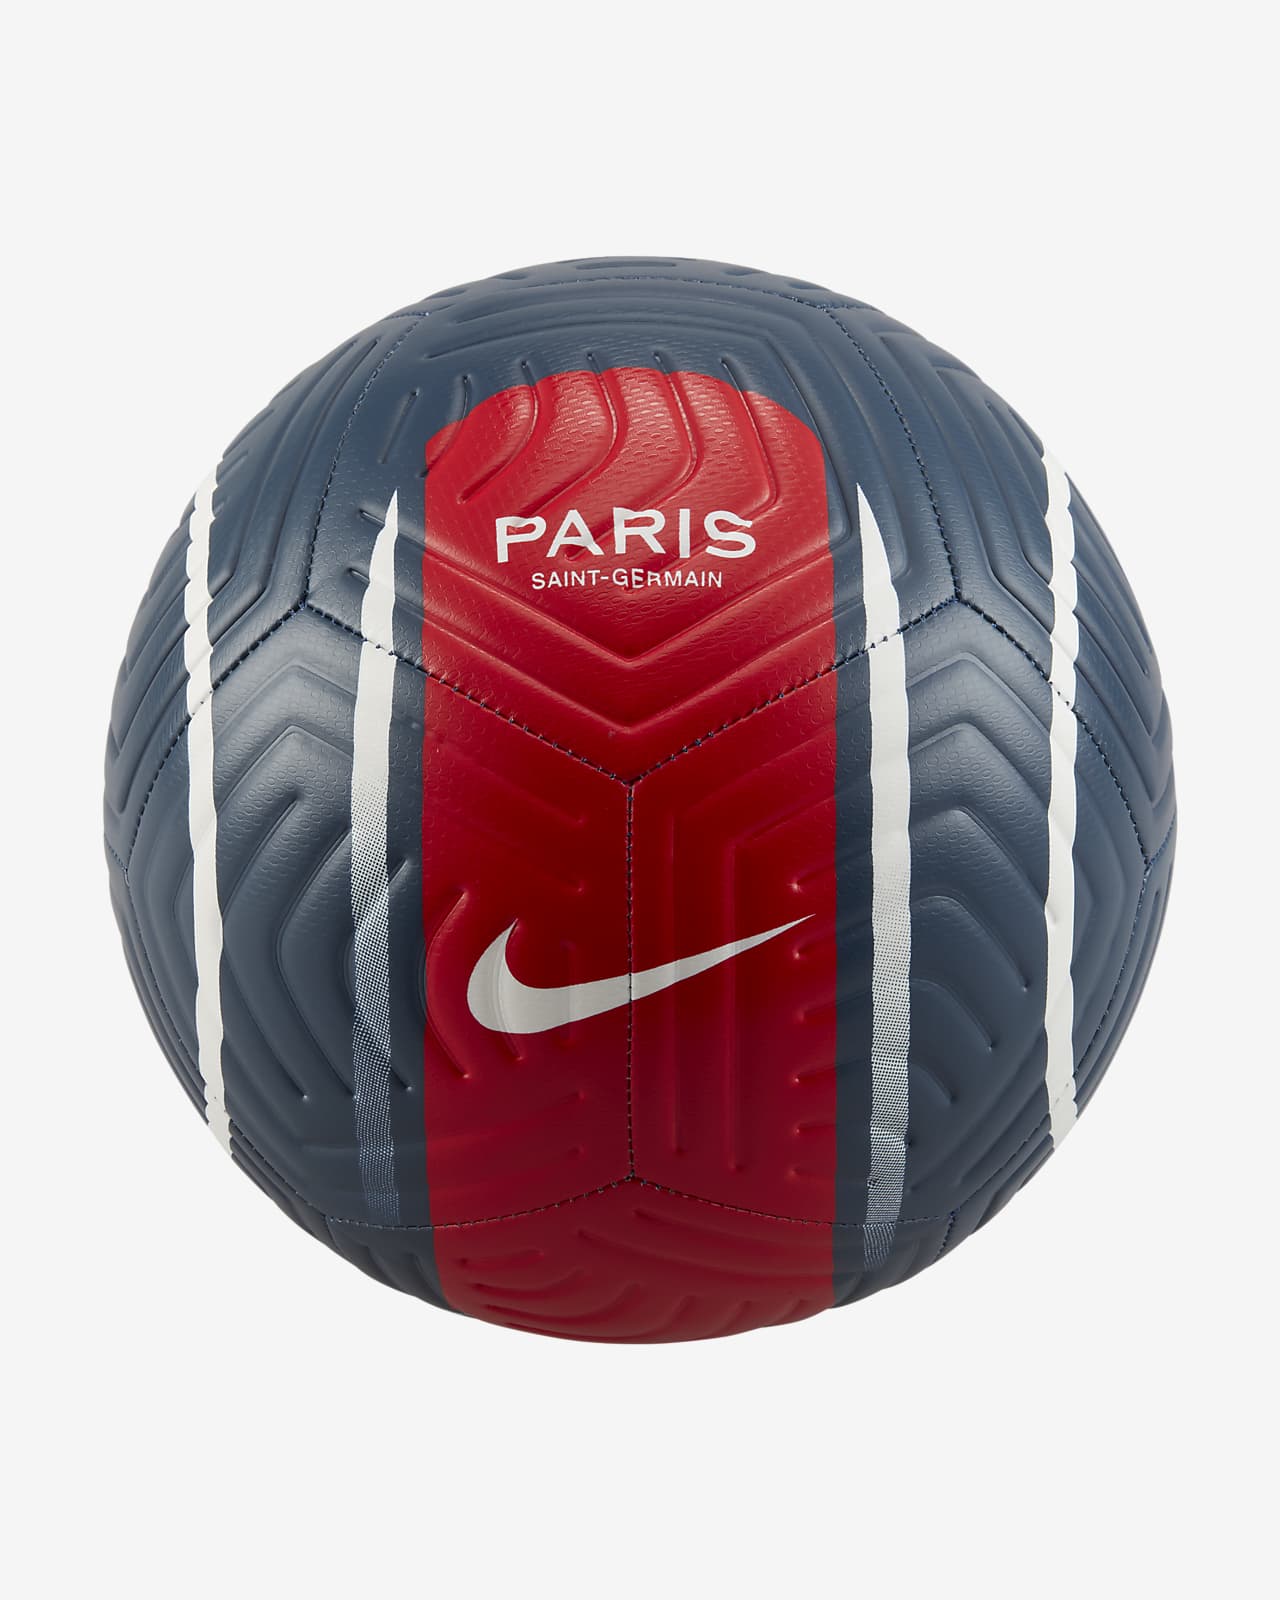 Paris Saint-Germain Strike Soccer Ball.